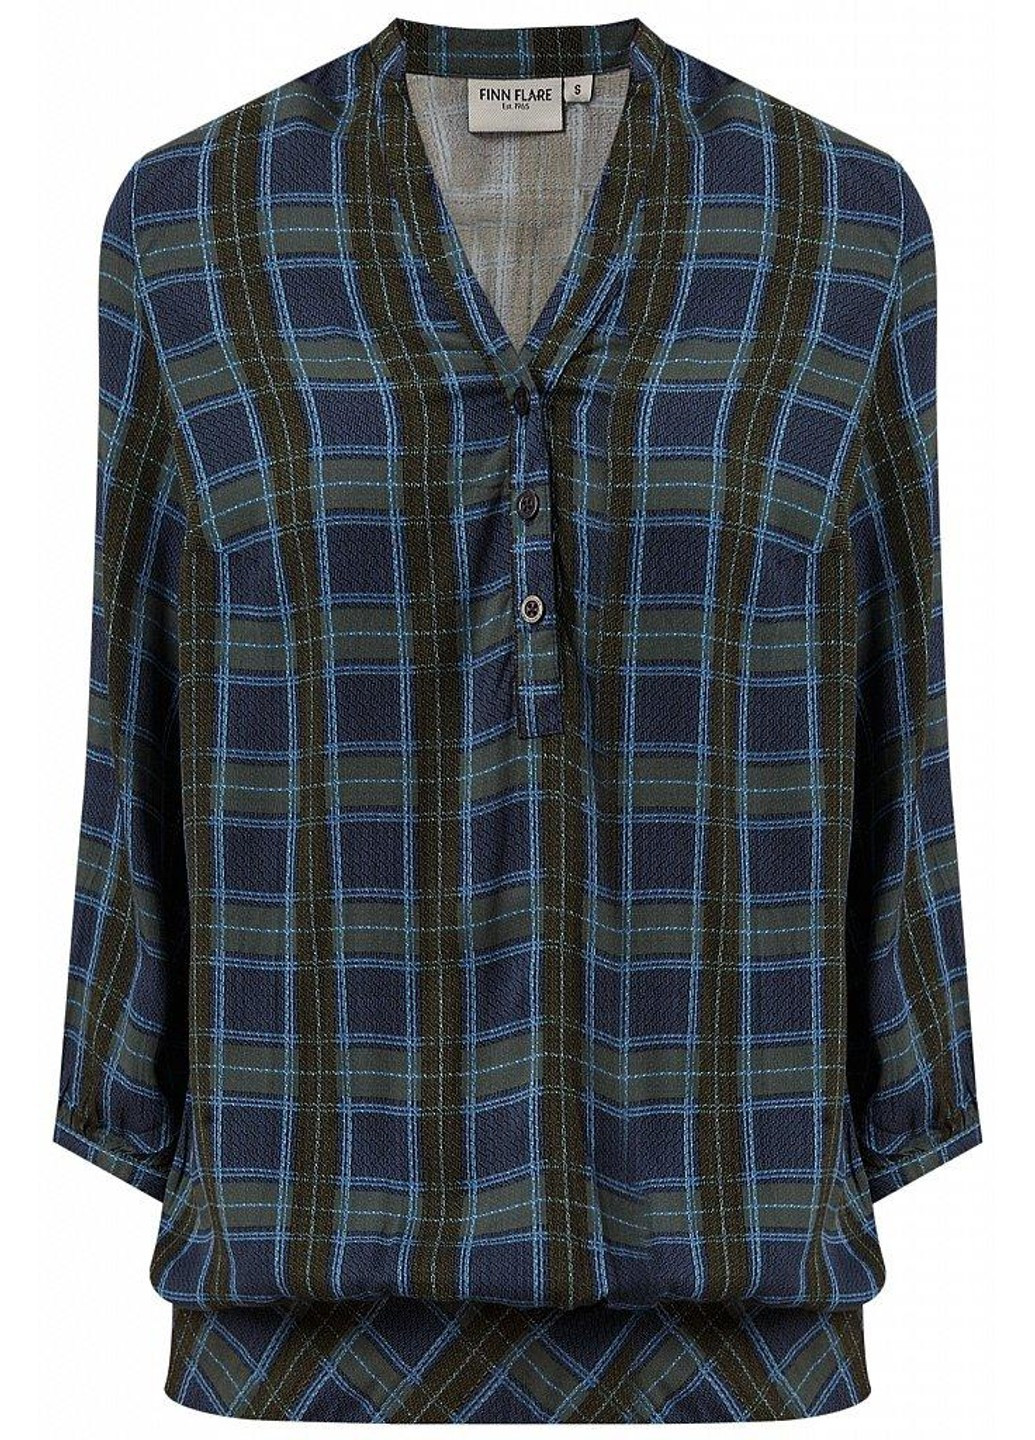 Темно-синяя летняя блуза b19-32027-101 Finn Flare